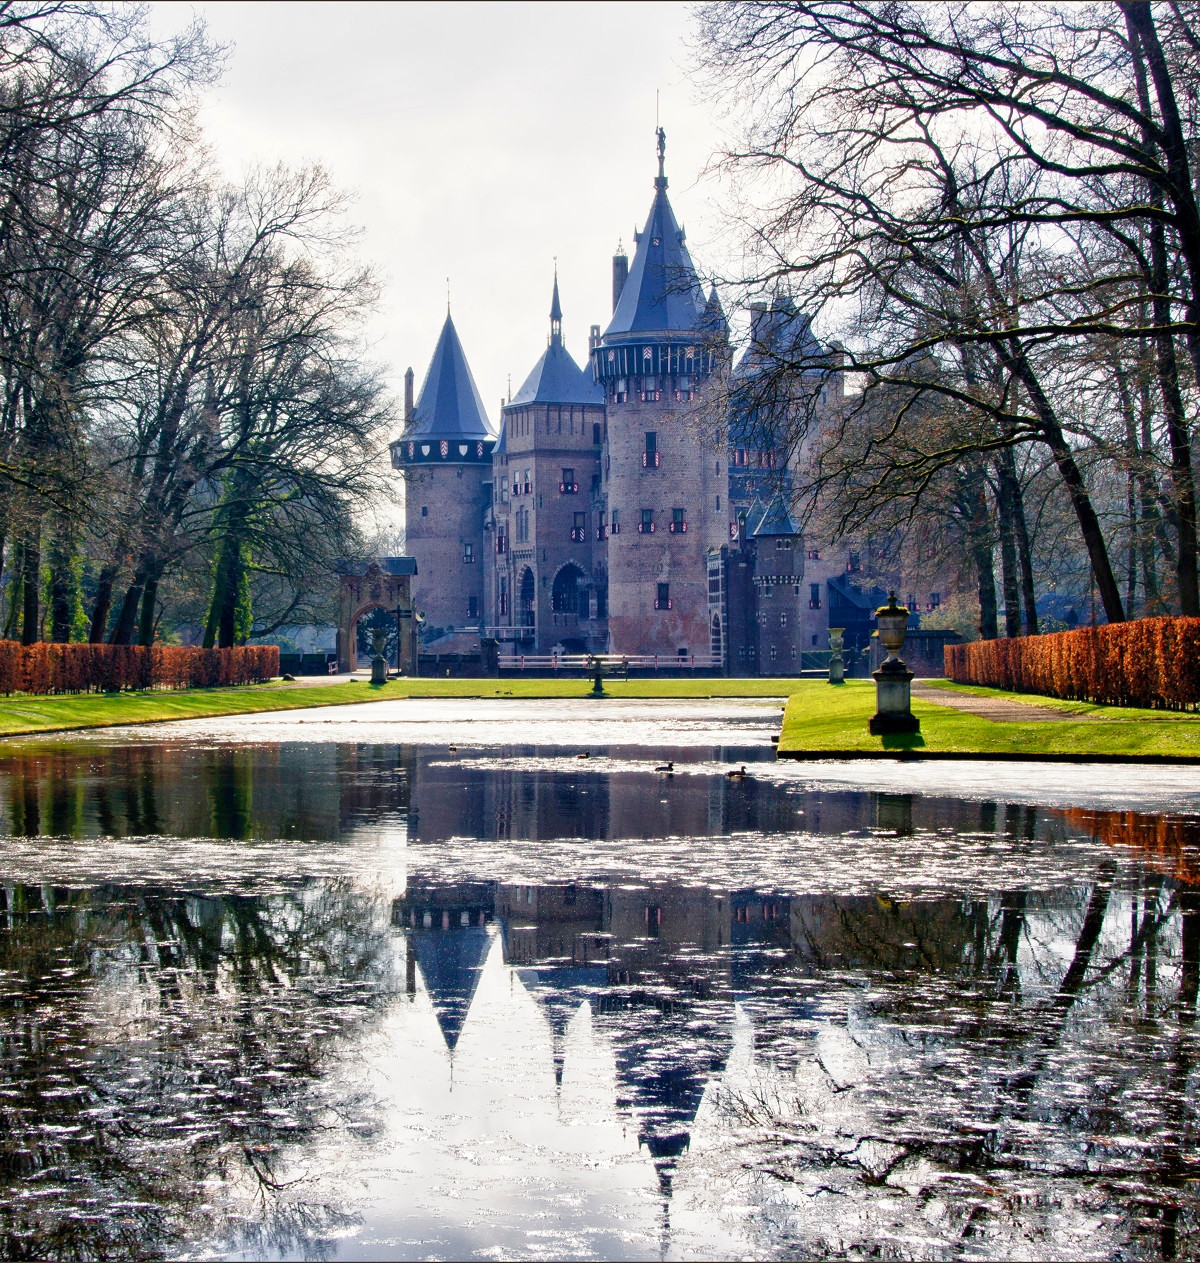 Castle de Haar. Credit Bert Kaufmann, flickr